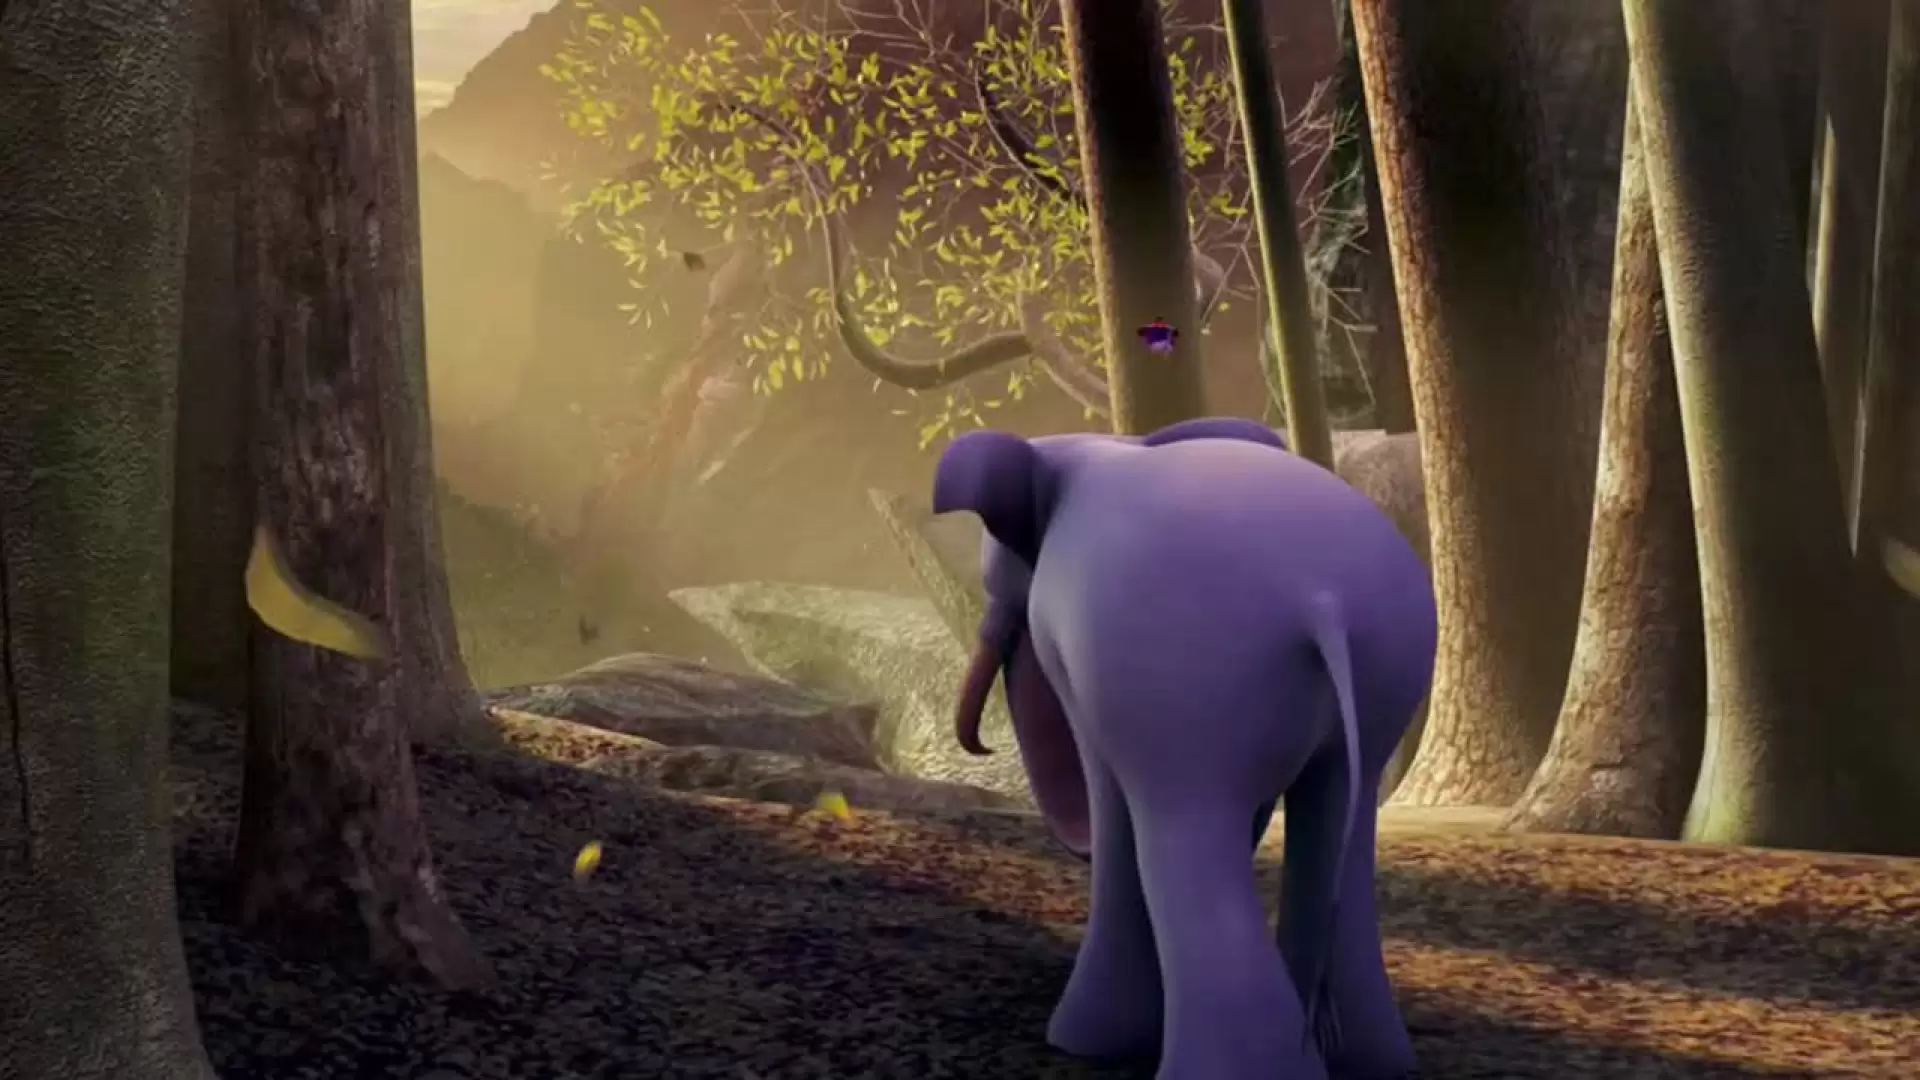 دانلود انیمیشن Elephant Kingdom 2016